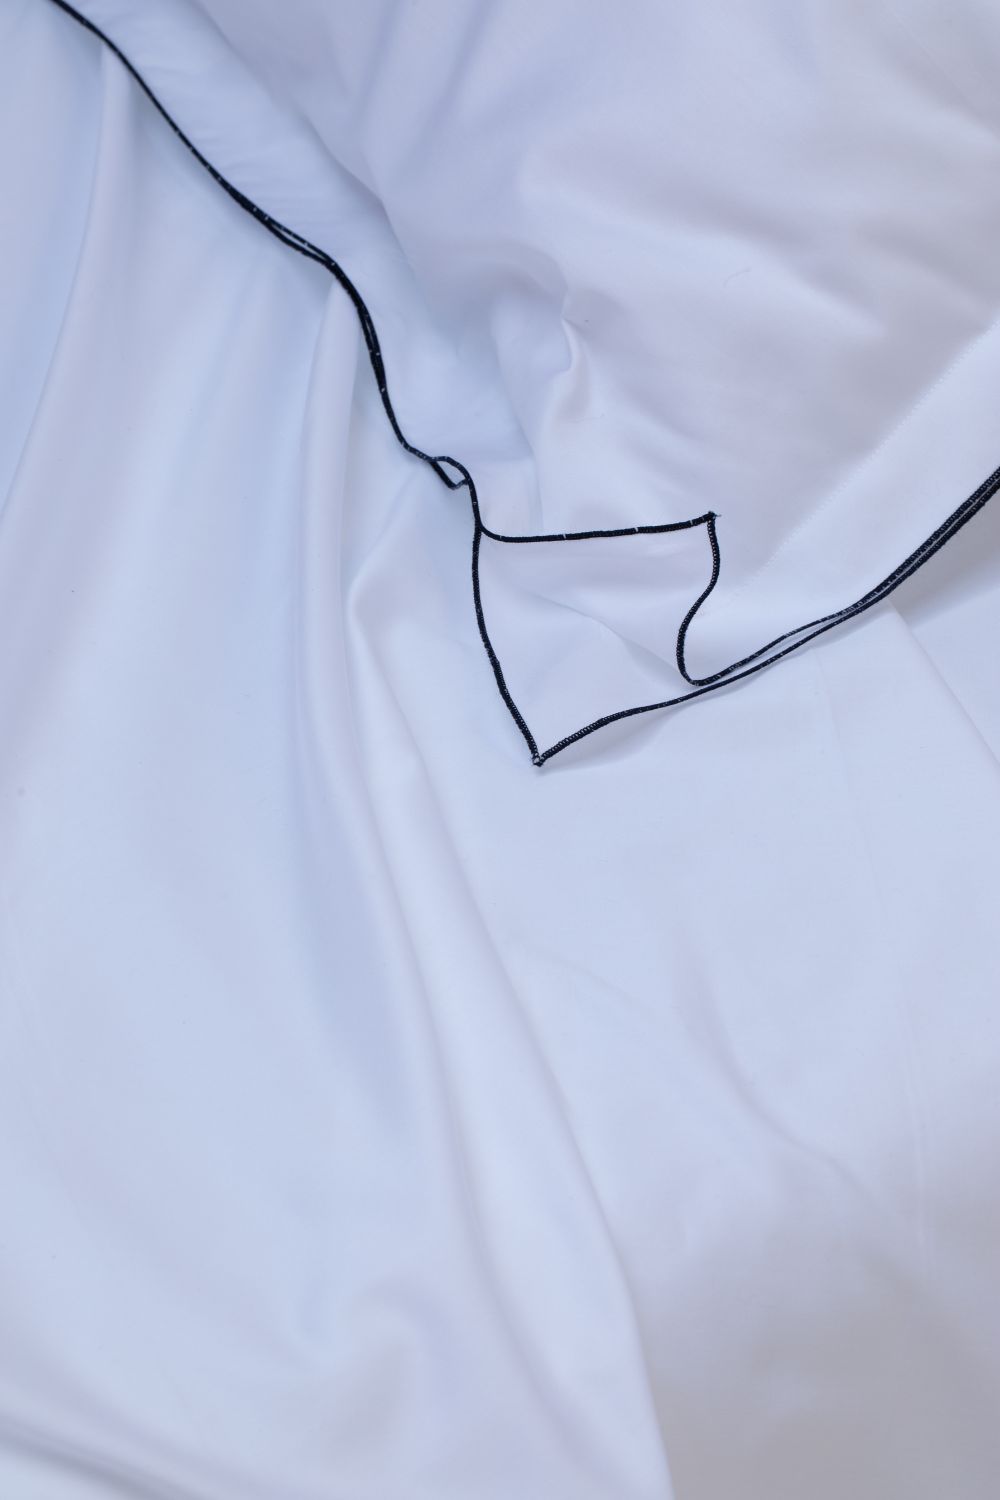 LUCINA - Lenzuolo sopra in raso di puro cotone rifinito con cordonetto-filo colorato